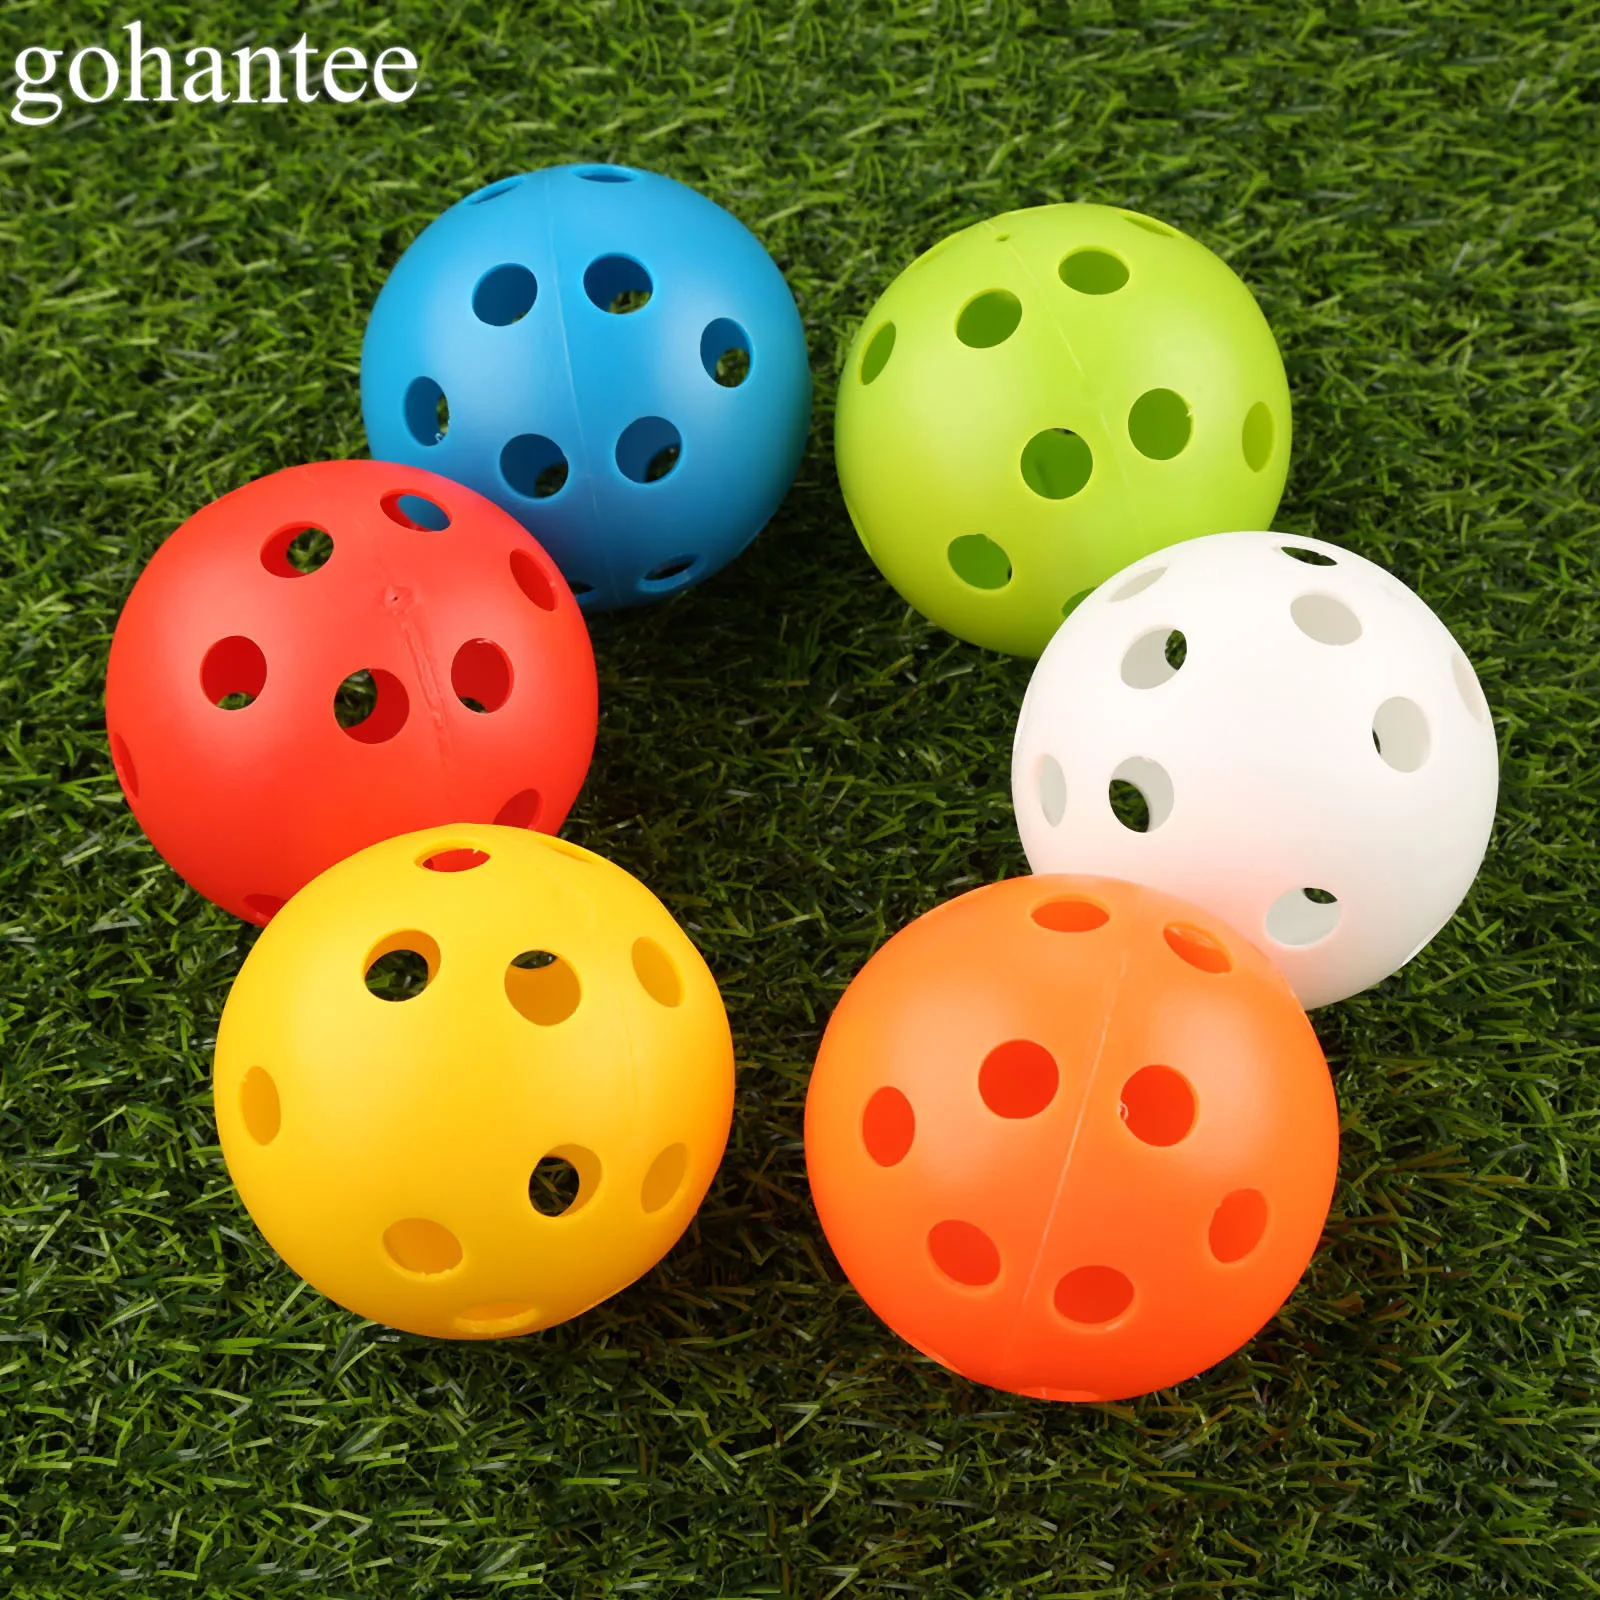 Gohantee 10 шт. 72 мм мячи для тренировки гольфа пластиковые воздушные шары полые с отверстием для гольфа наружные мячи для игры в гольф аксессуары для гольфа